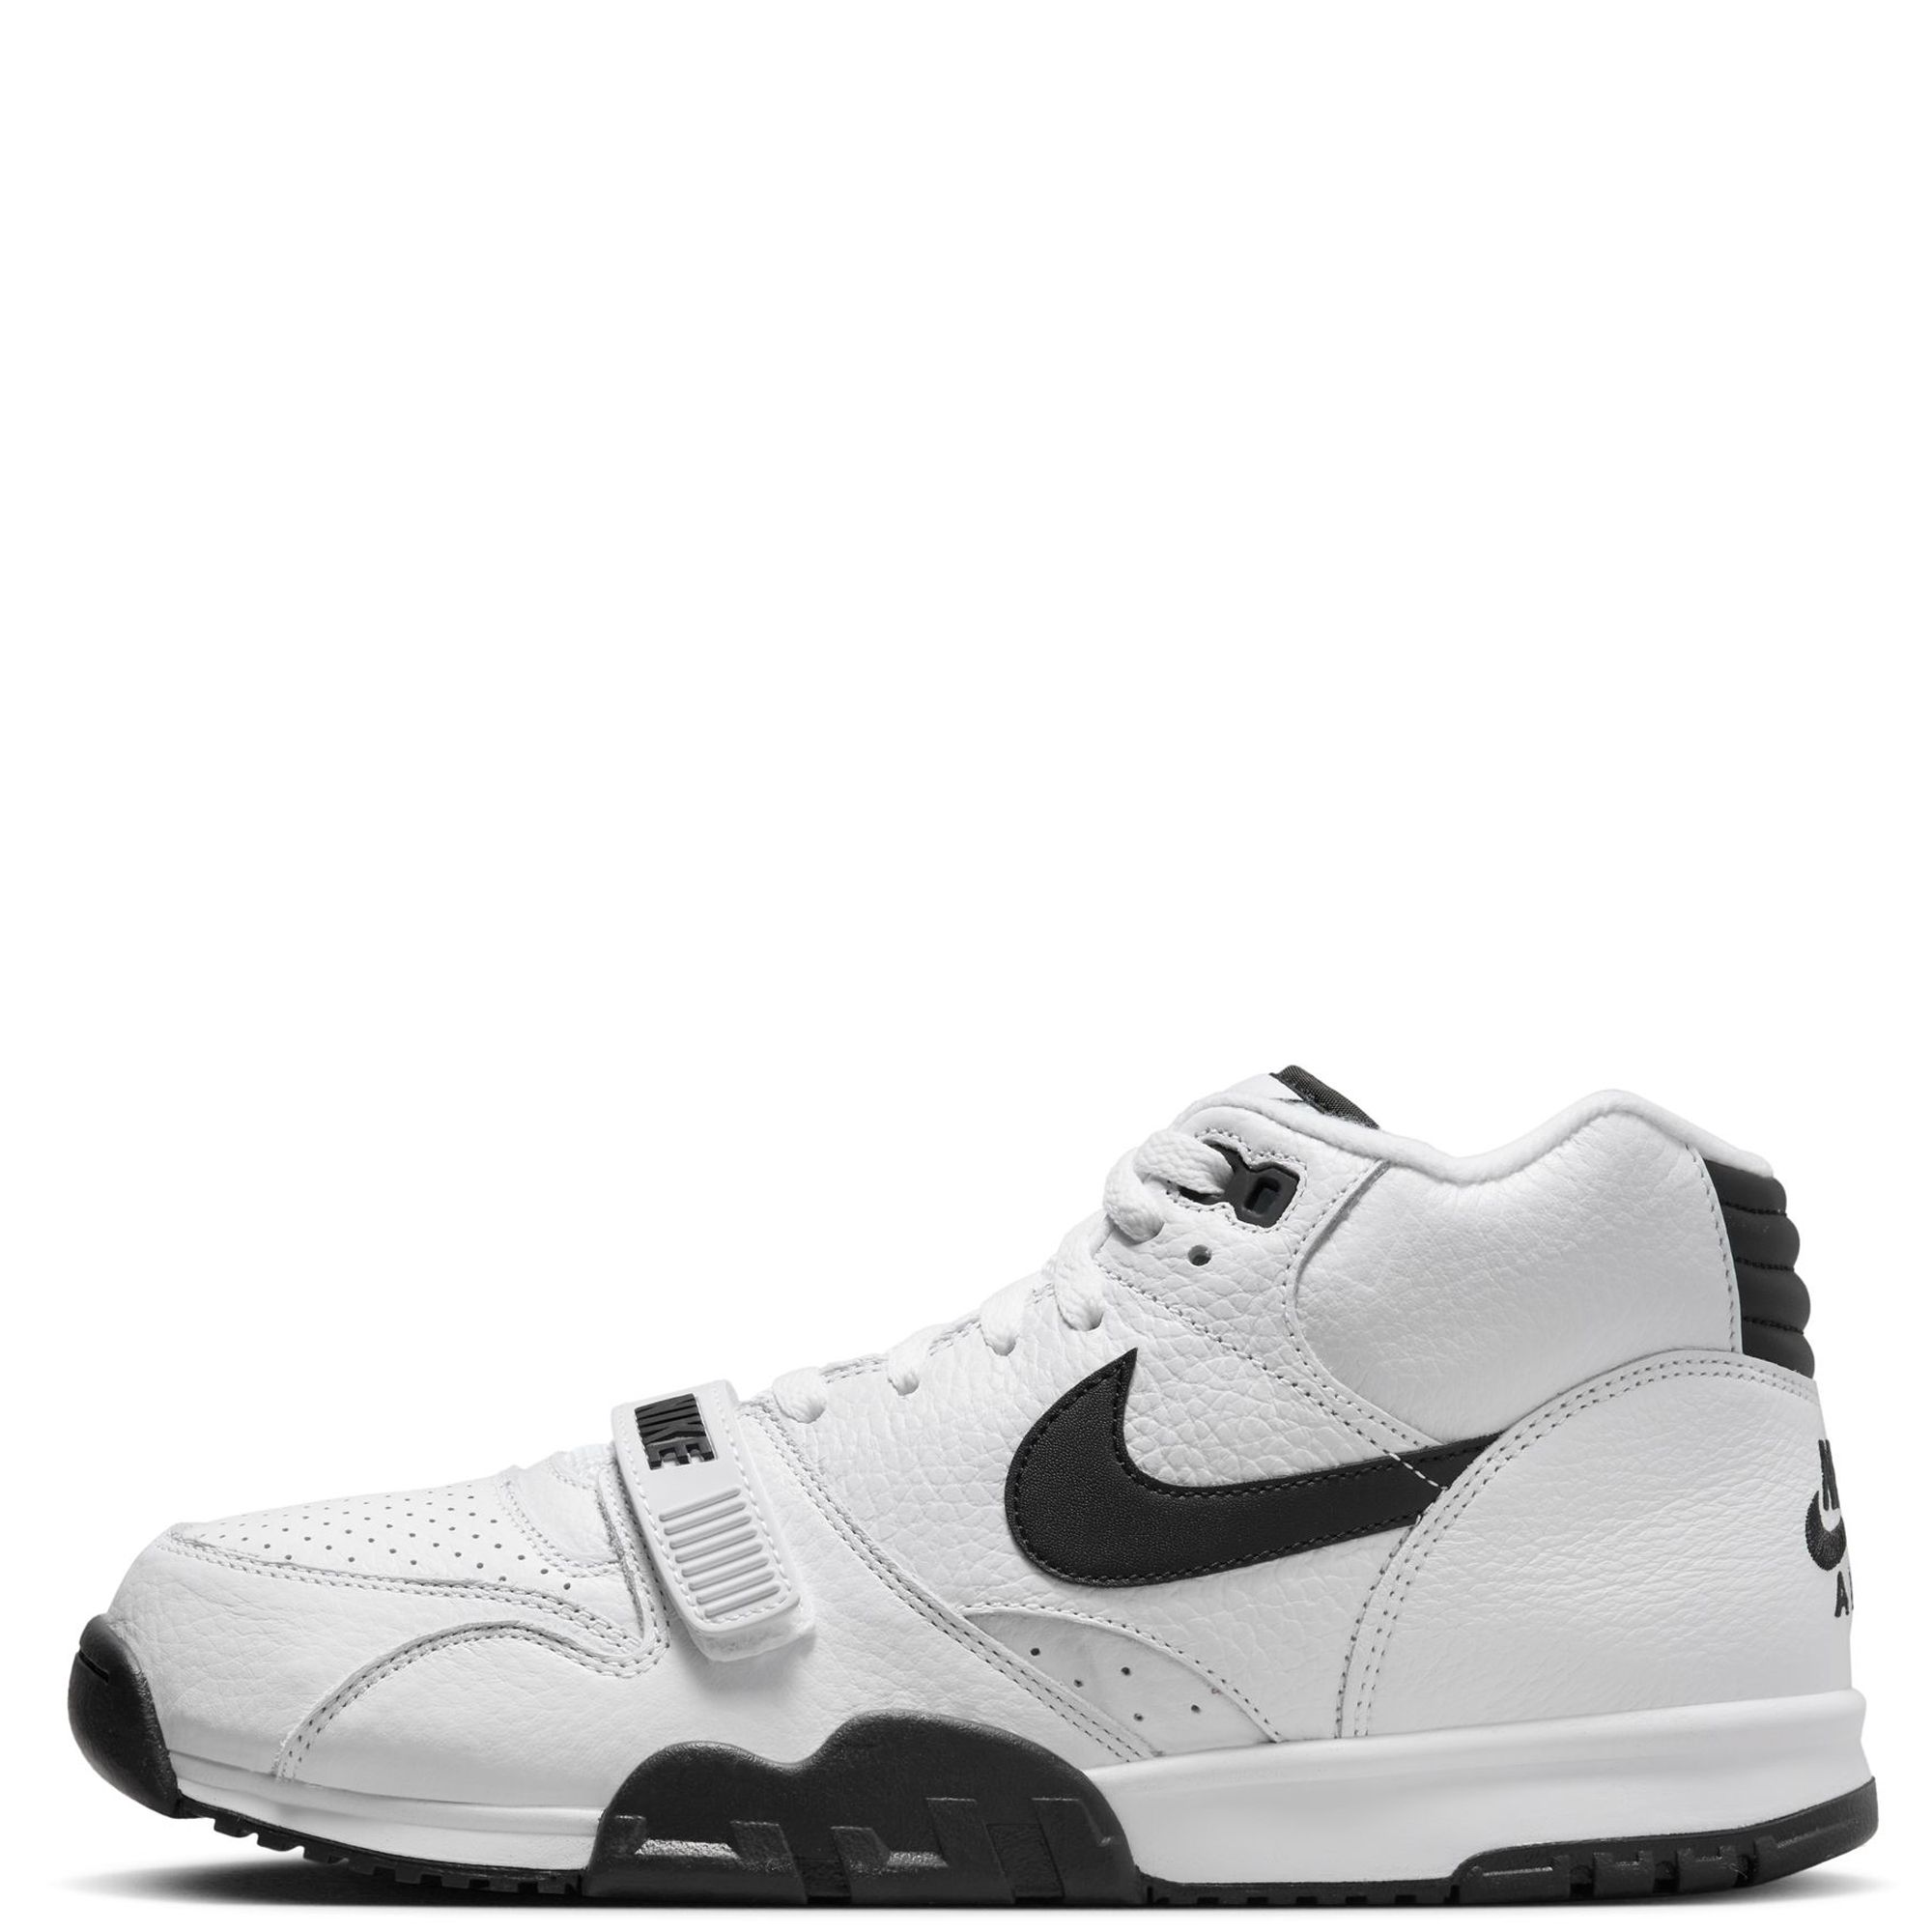 Nike Men's Air Trainer 1 SP Grey Sneakers